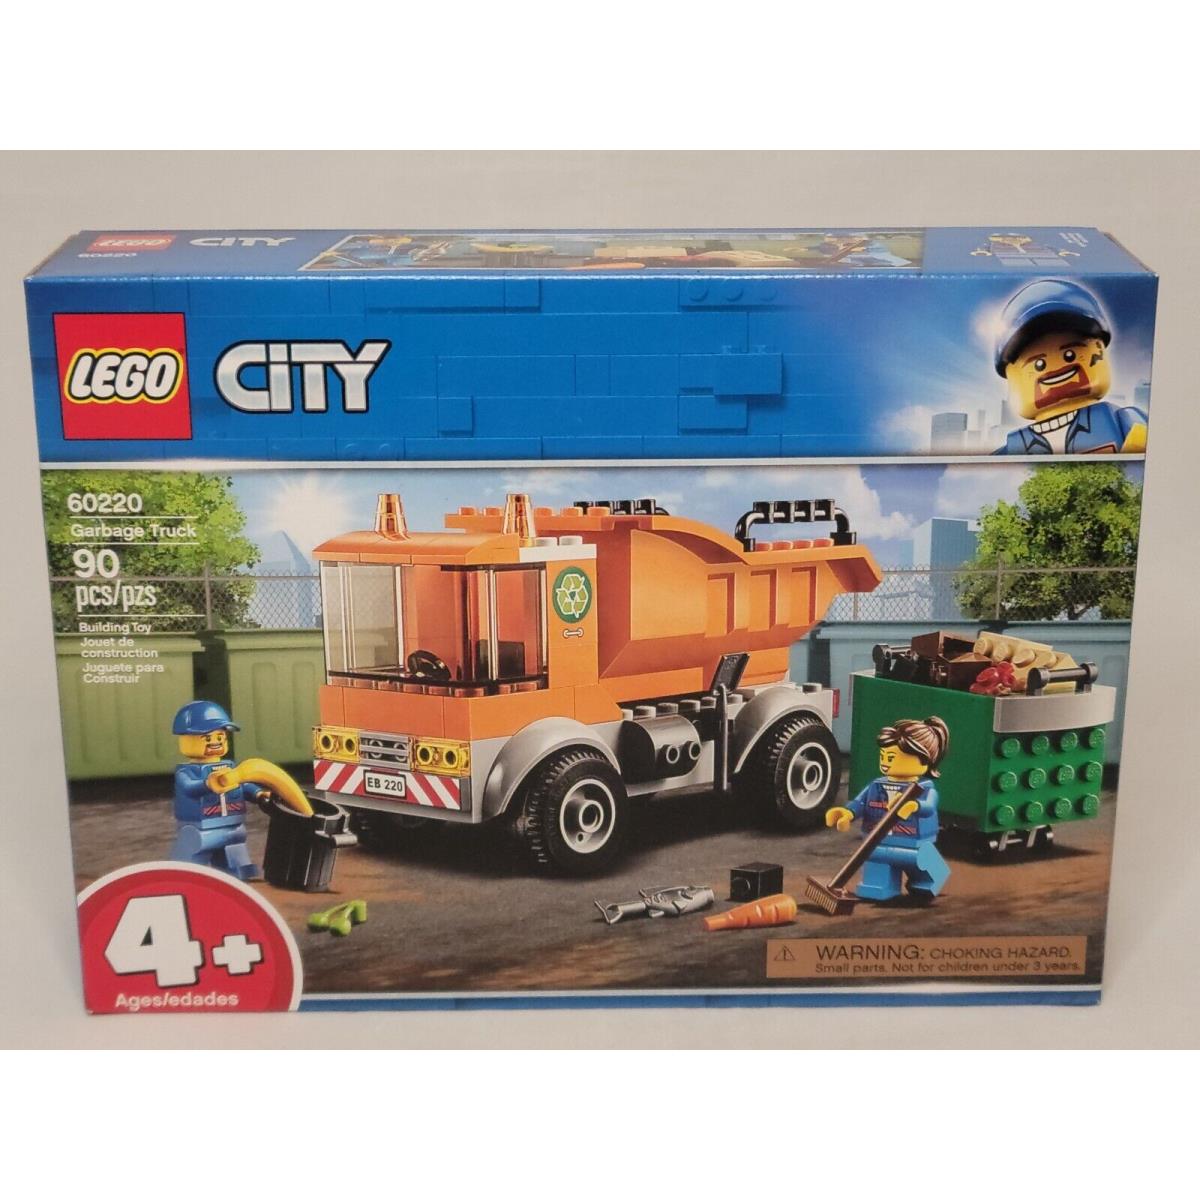 Lego 60220 Garbage Truck Orange City 2019 IN Hand